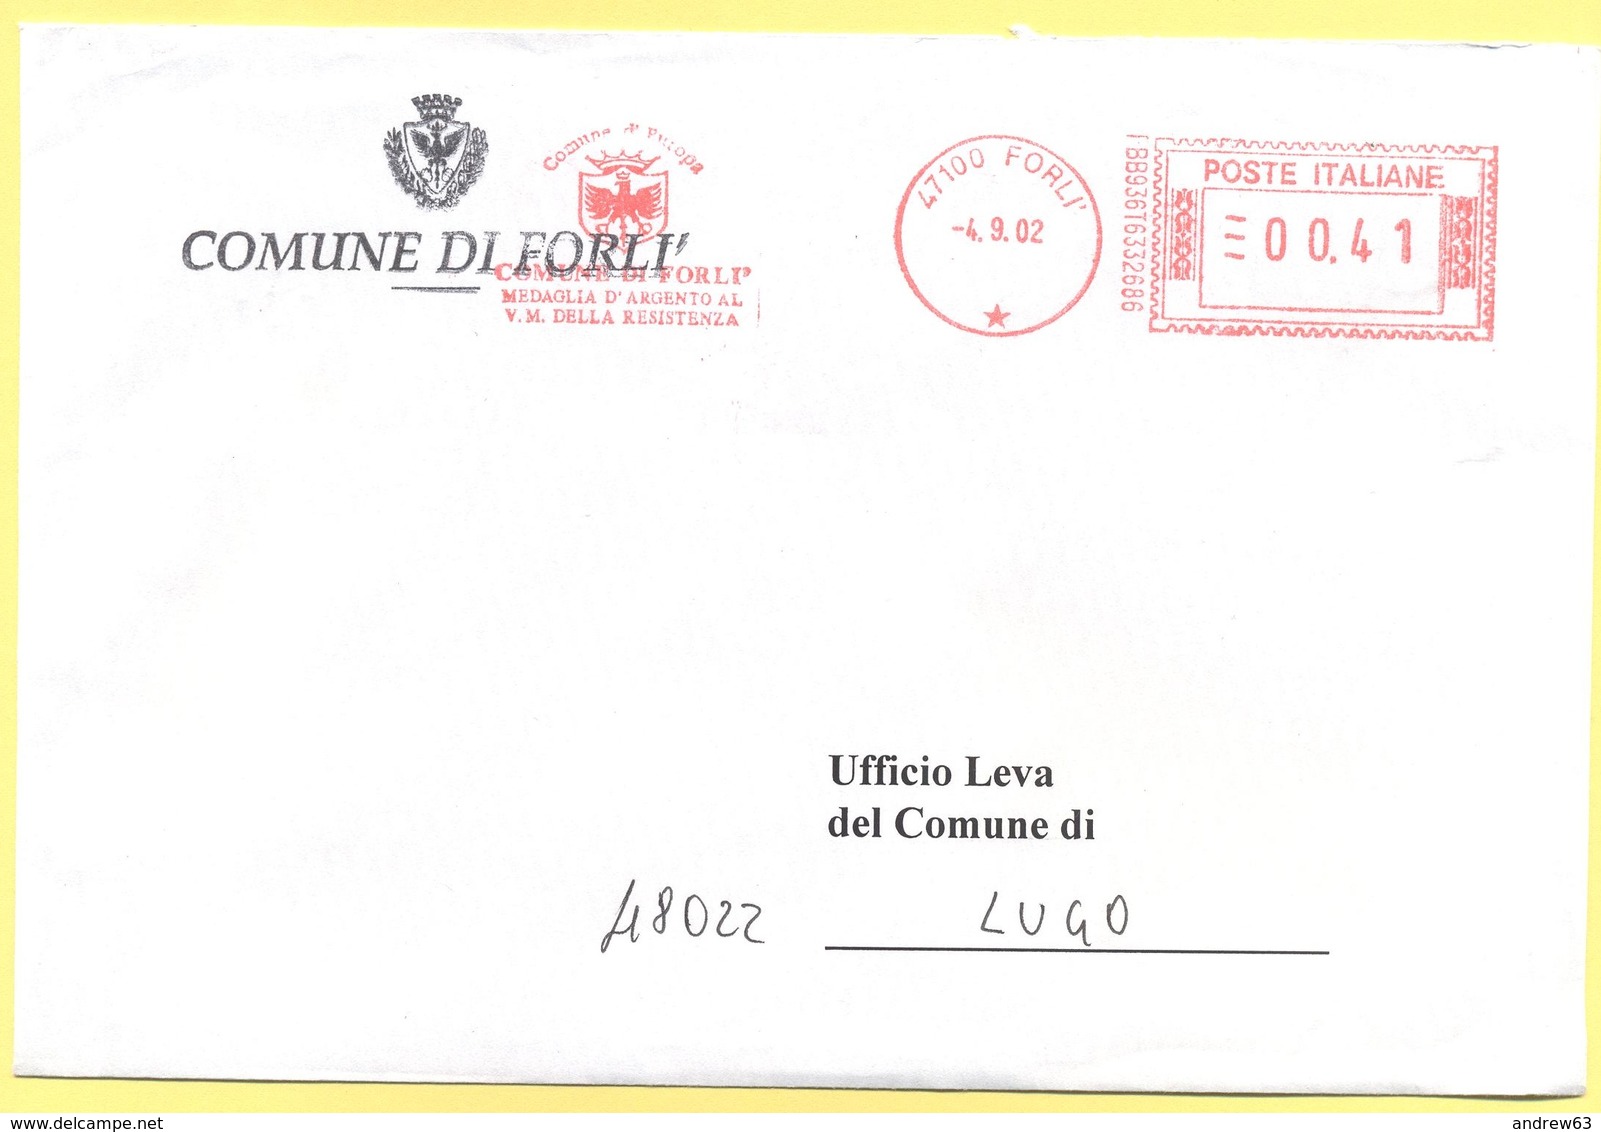 ITALIA - ITALY - ITALIE - 2002 - 00,41 EMA, Red Cancel - Comune Di Forlì - Viaggiata Da Forlì Per Lugo - Macchine Per Obliterare (EMA)